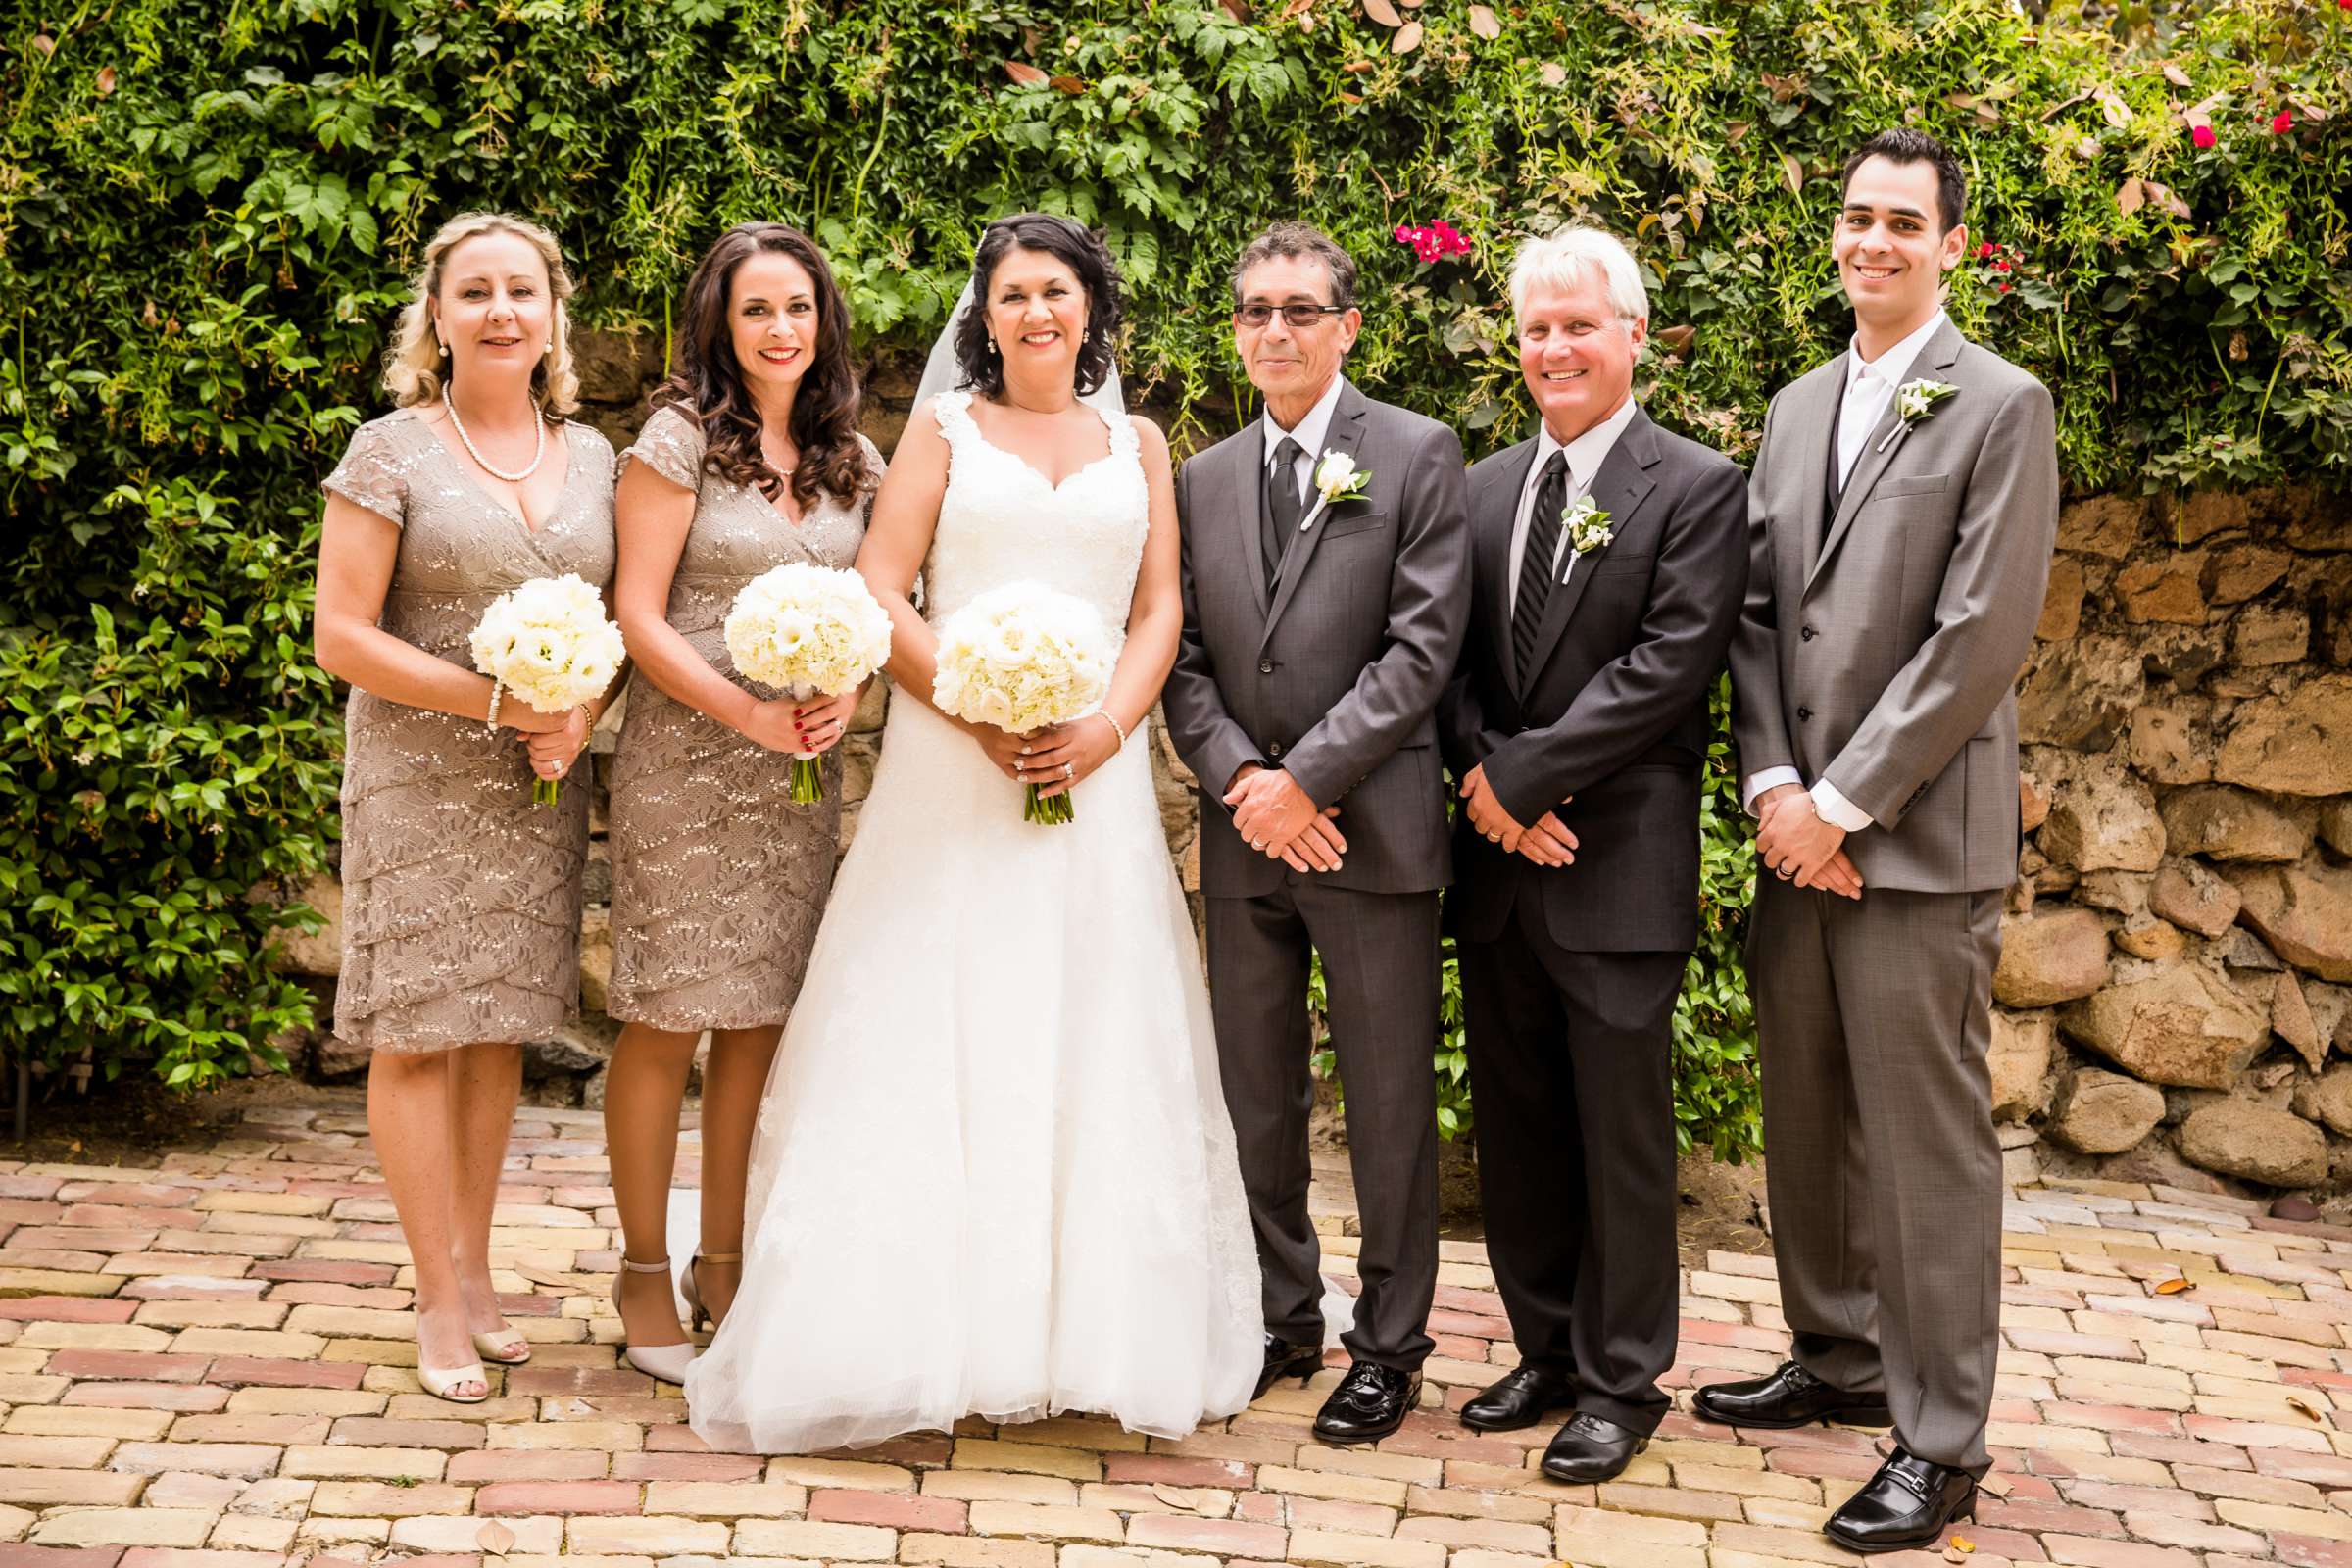 Rancho Buena Vista Adobe Wedding, Ellinor and Frank Wedding Photo #33 by True Photography